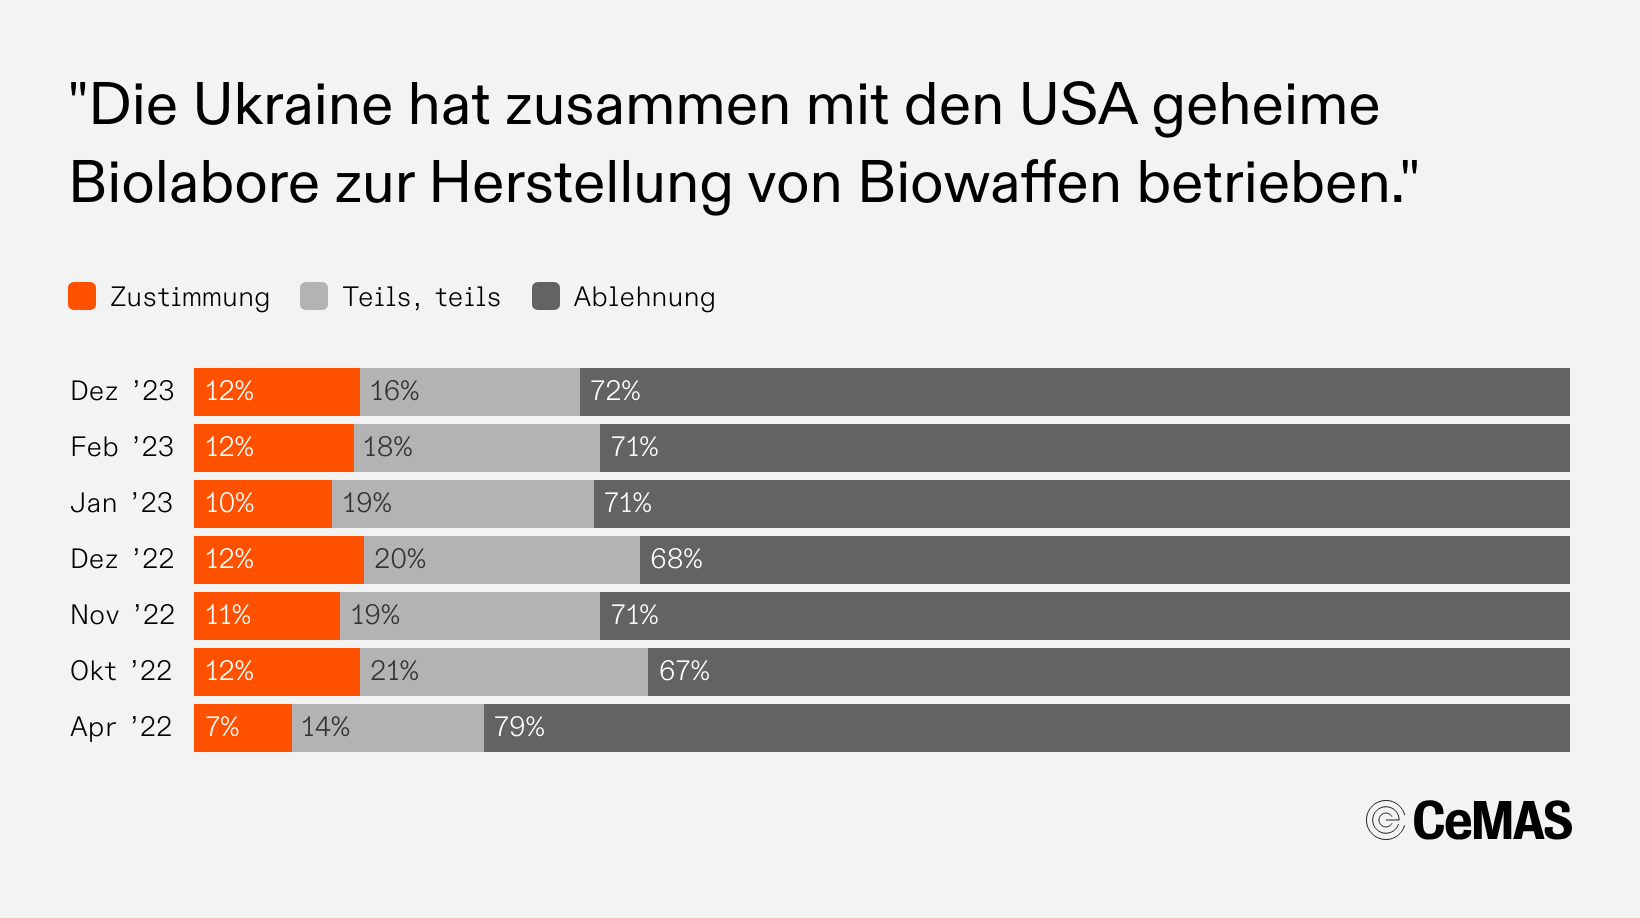 Zustimmungswerte zur Aussage „Die Ukraine hat zusammen mit den USA geheime Biolabore zur Herstellung von Biowaffen betrieben“:
  Dez 23: Zustimmung 12 %, Teils teils 16 %, Ablehnung 72 %
  Feb 23: Zustimmung 12 %, Teils teils 18 %, Ablehnung 71 %
  Jan 23: Zustimmung 10 %, Teils teils 19 %, Ablehnung 71 %
  Dez 22: Zustimmung 12 %, Teils teils 20 %, Ablehnung 68 %
  Nov 22: Zustimmung 11 %, Teils teils 19 %, Ablehnung 71 %
  Okt 22: Zustimmung 12 %, Teils teils 21 %, Ablehnung 67 %
  Apr 22: Zustimmung  7 %, Teils teils 14 %, Ablehnung 79 %